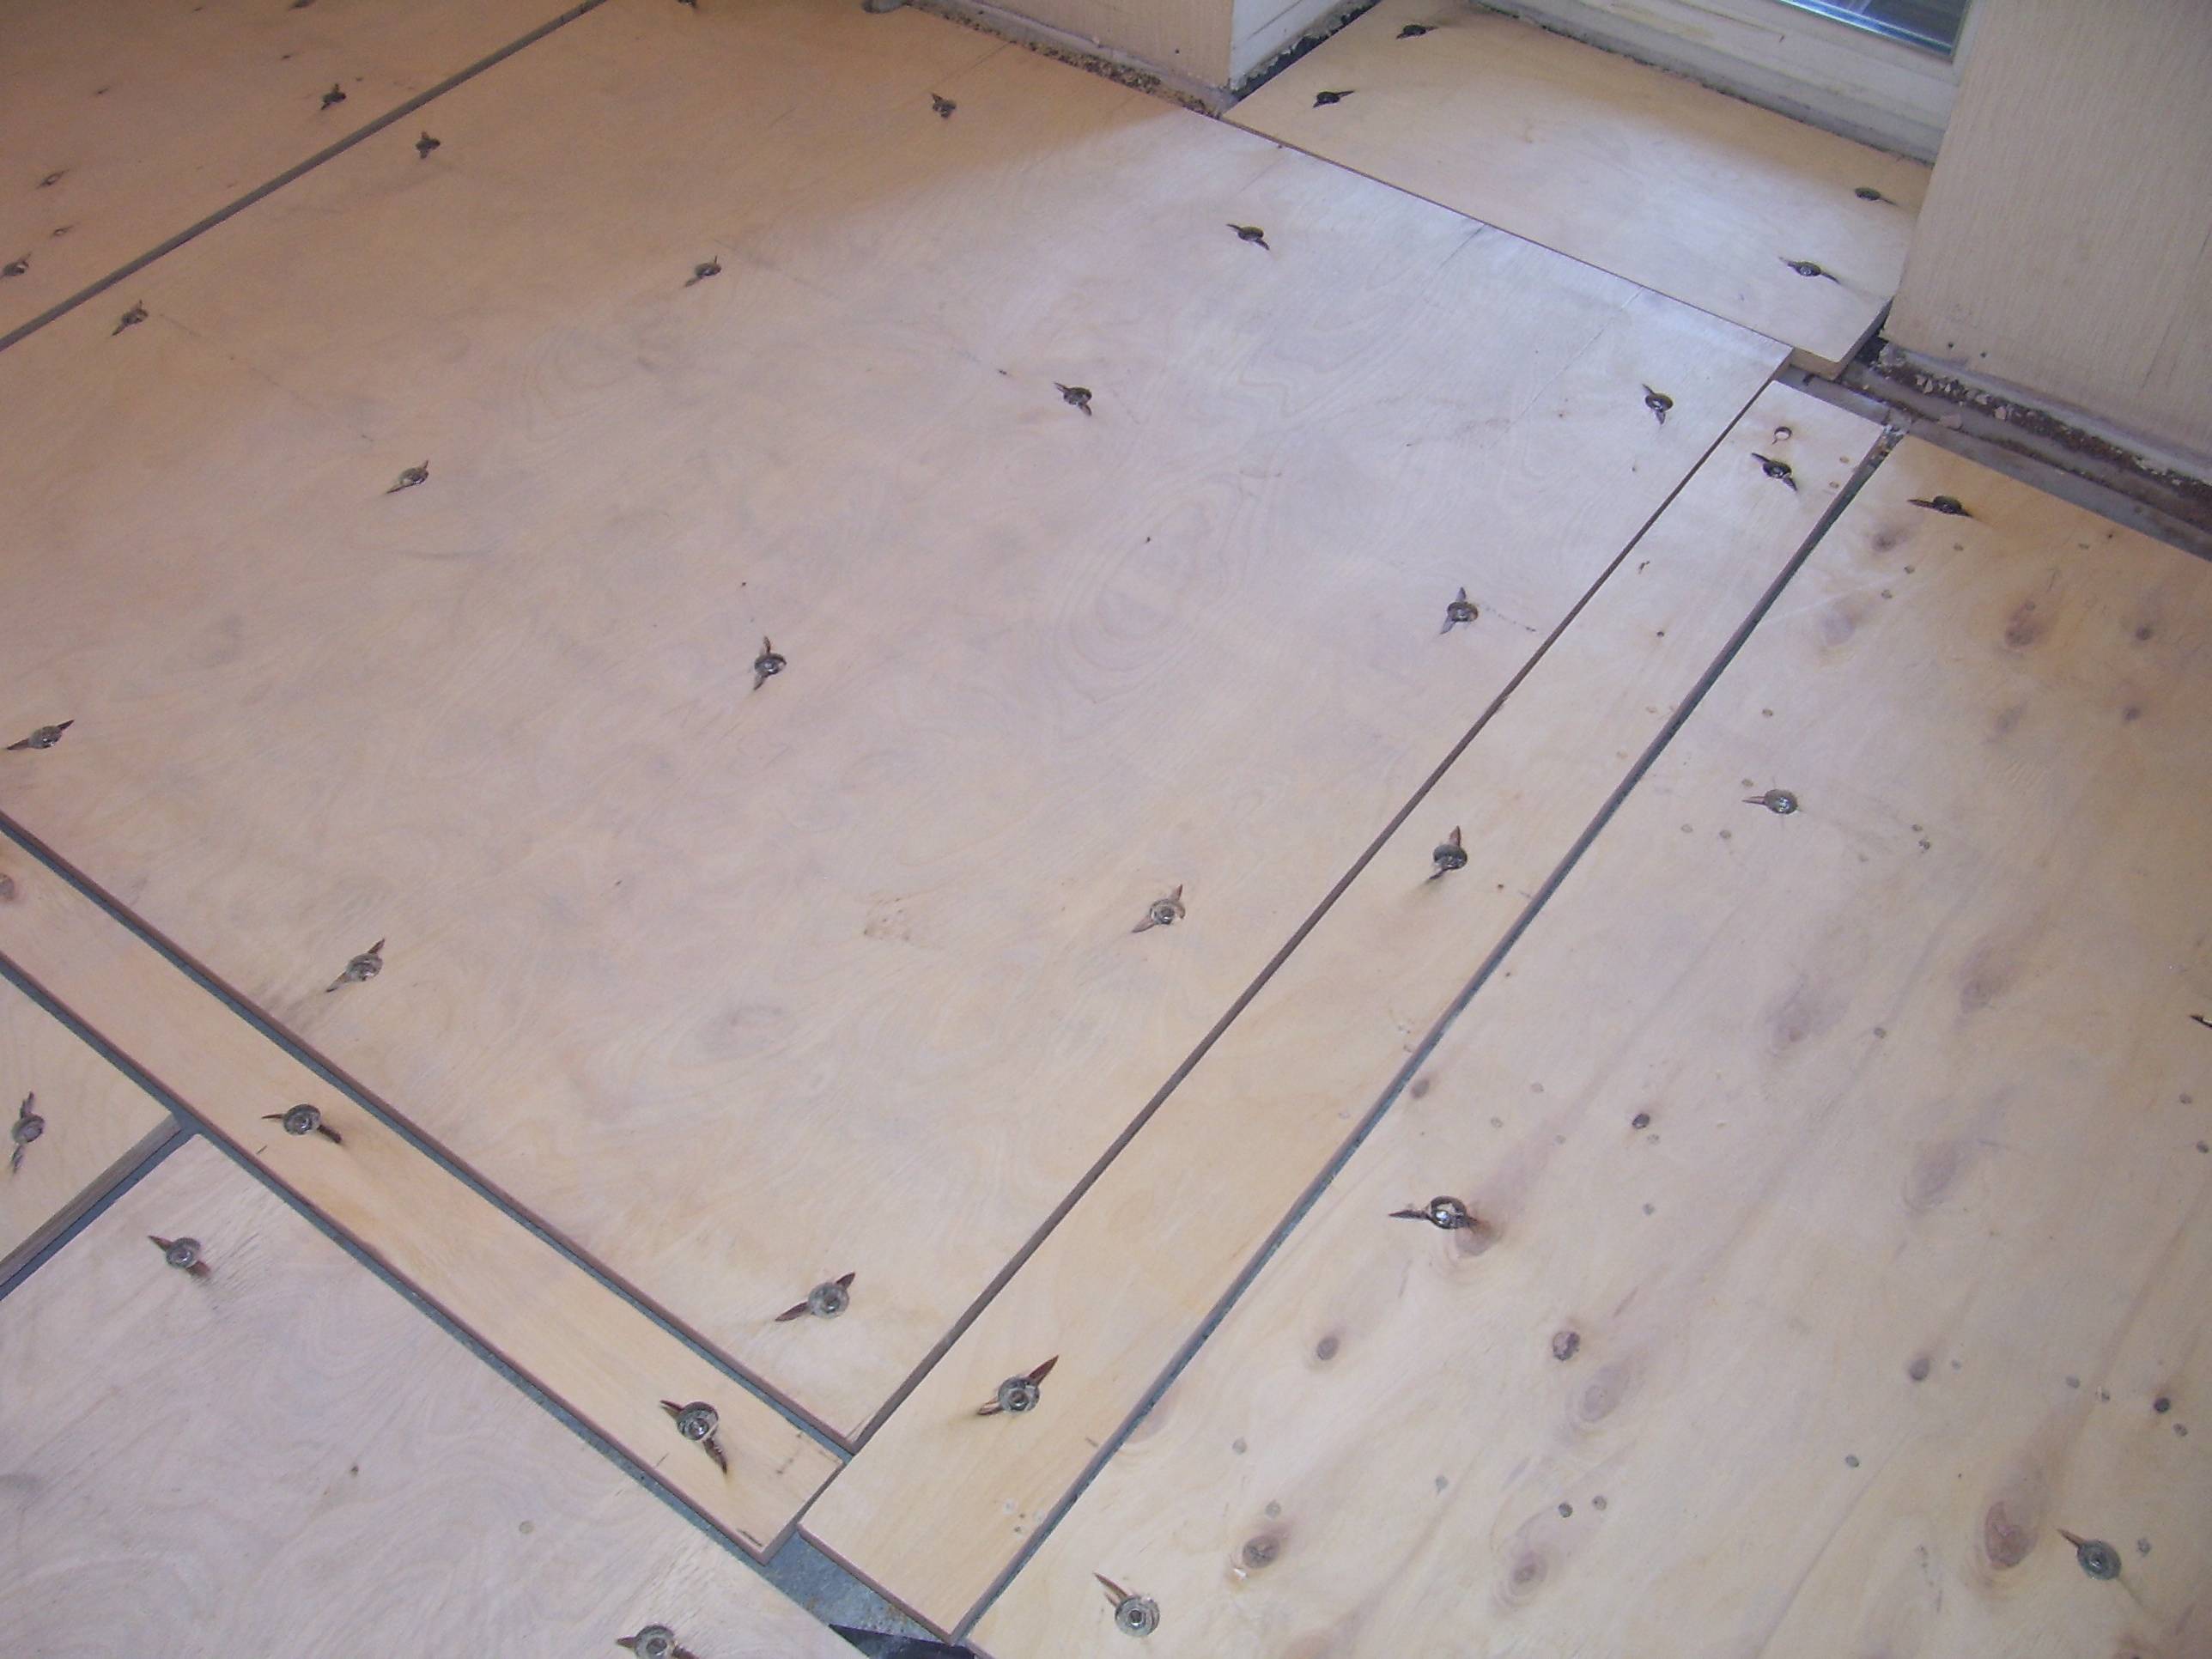 Как правильно провести укладку фанеры на бетонный пол